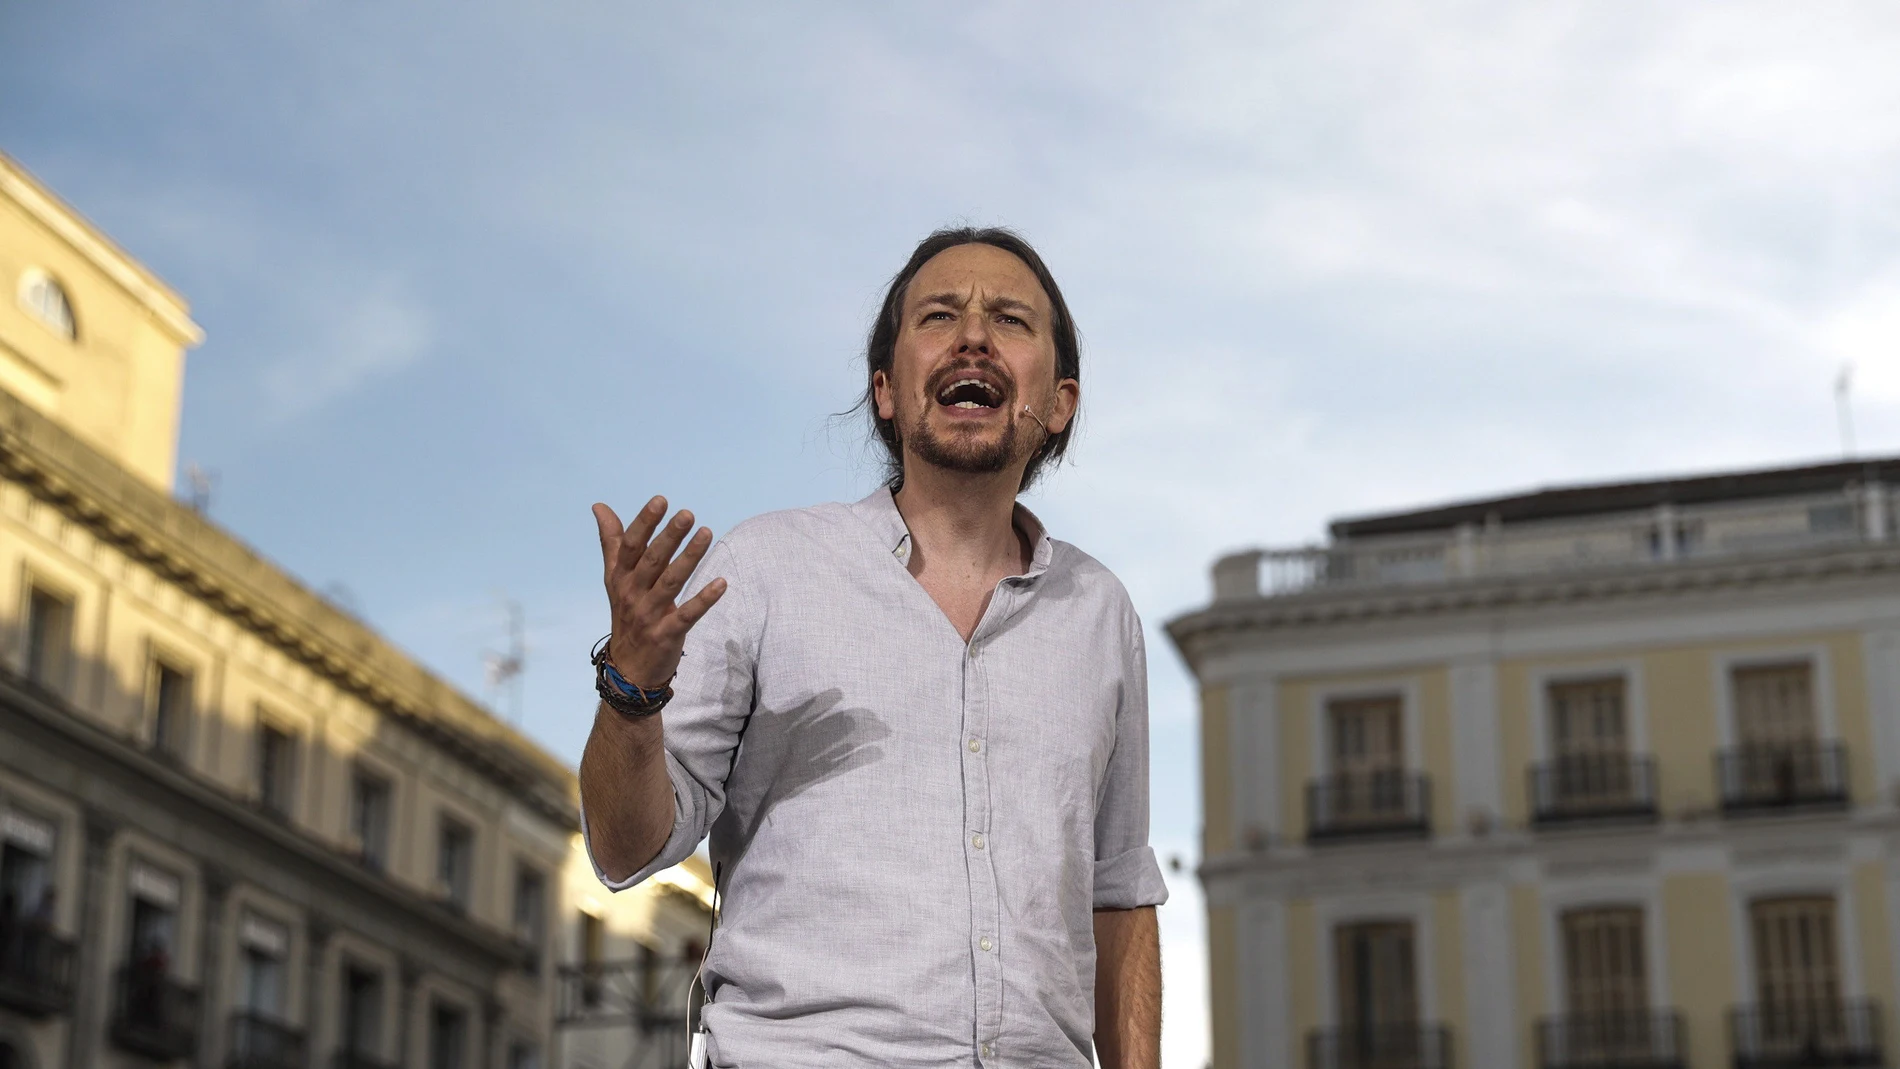 El líder de Podemos Pablo Iglesias interviene en la Puerta del Sol de Madrid